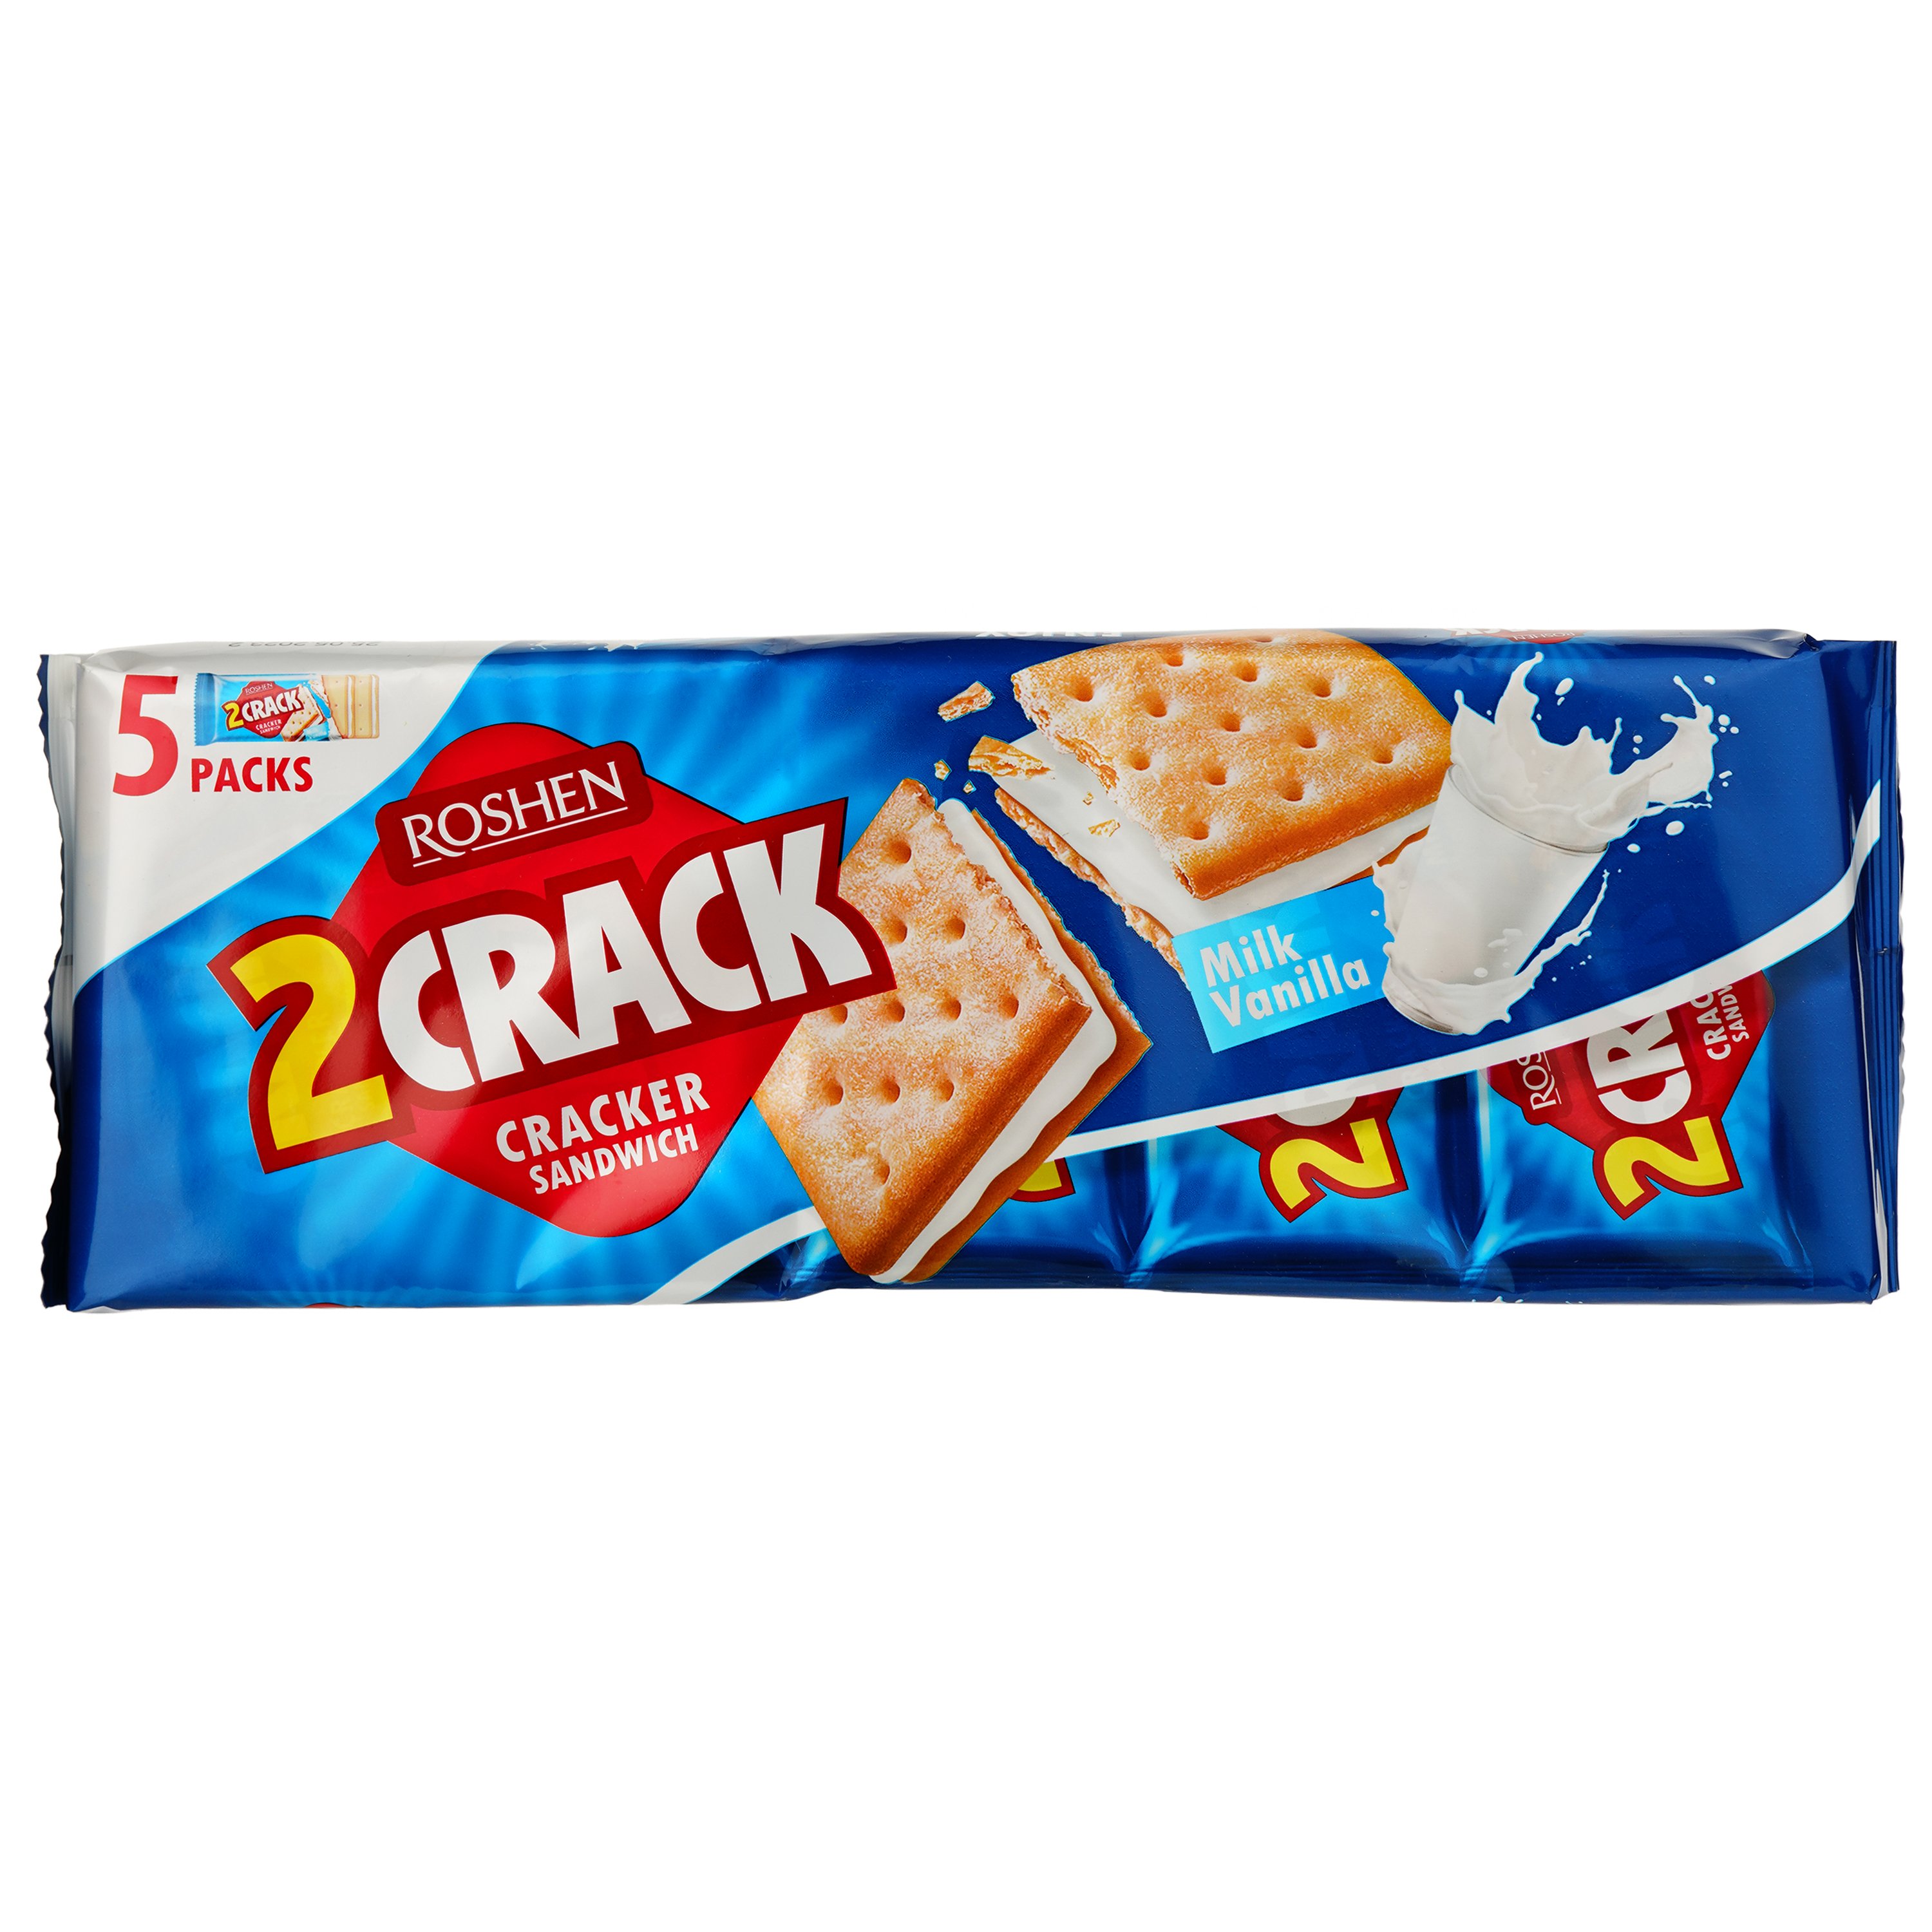 Крекер Roshen 2 Crack з молочно-ванільною начинкою 235 г (837361) - фото 2